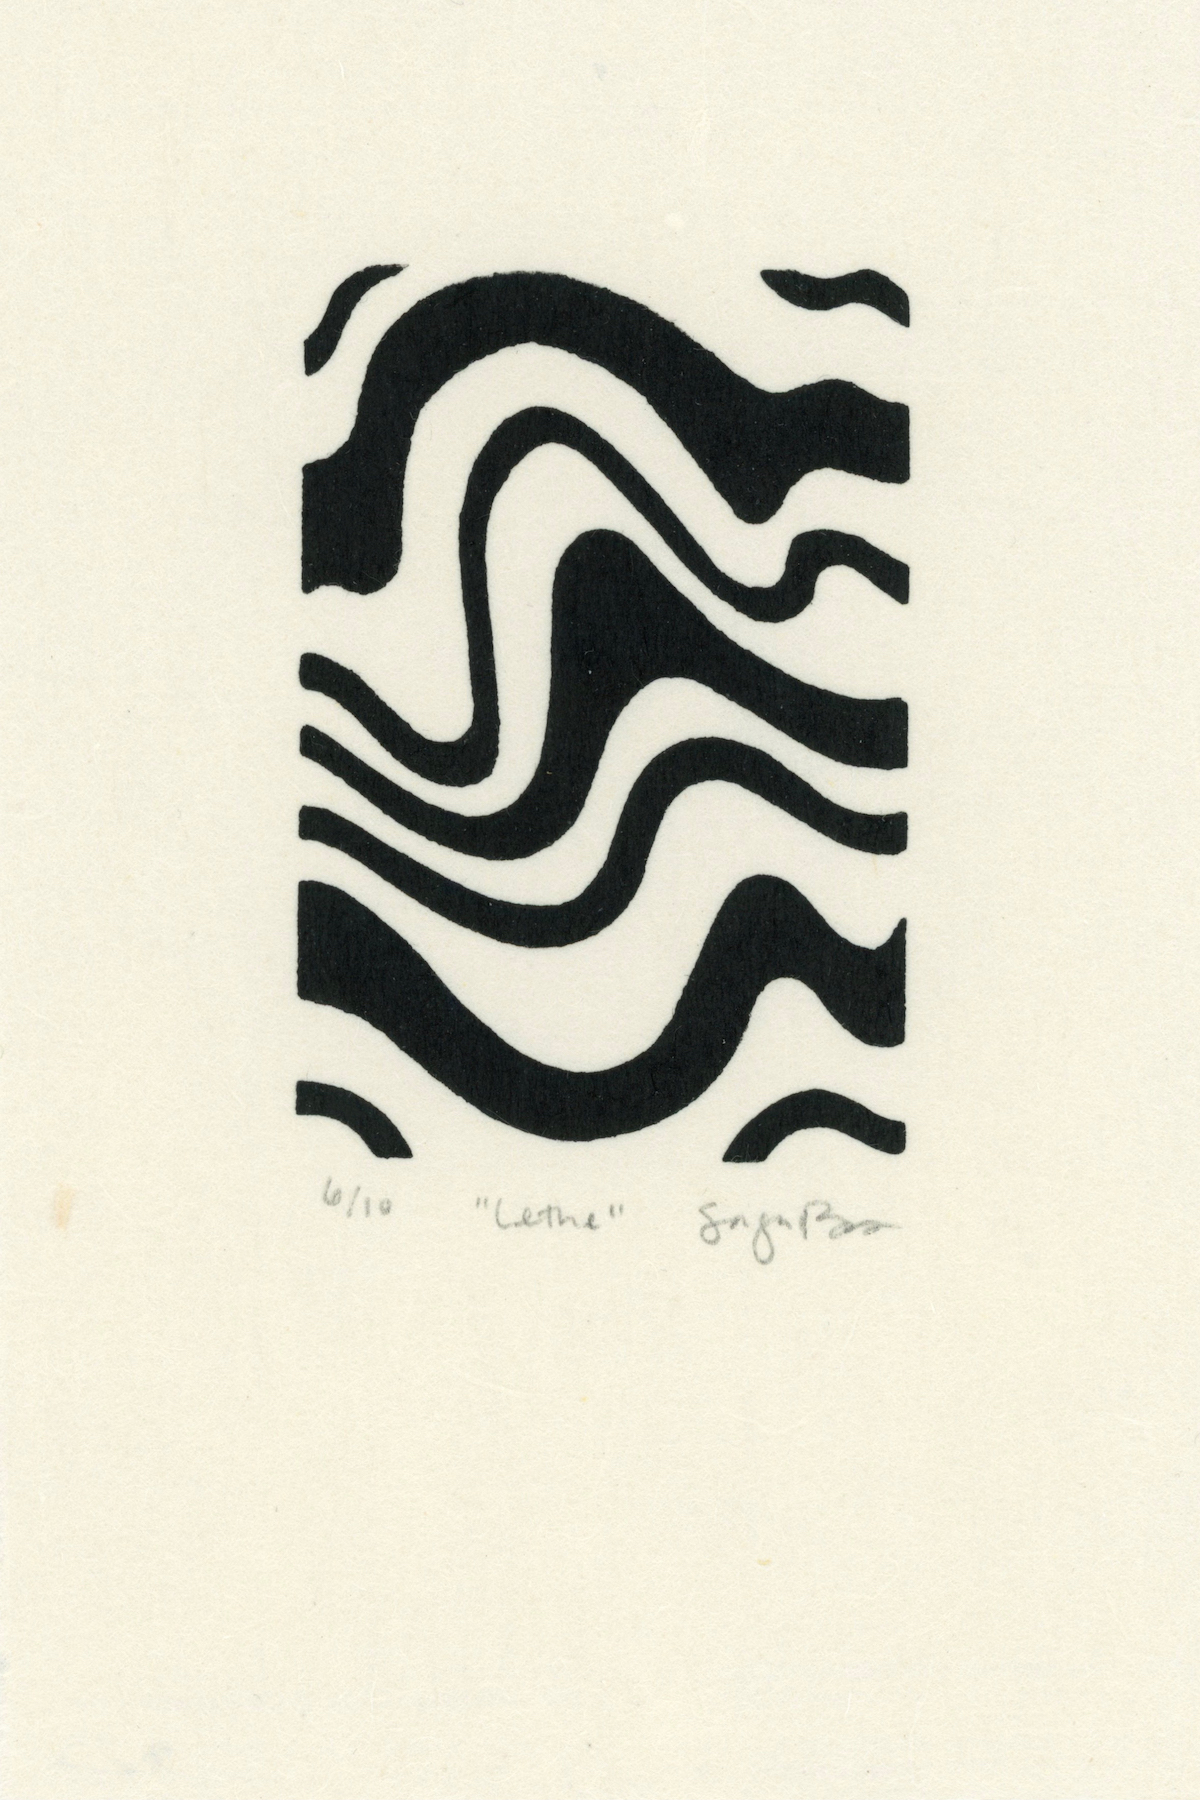 Abstract Wavy River Print